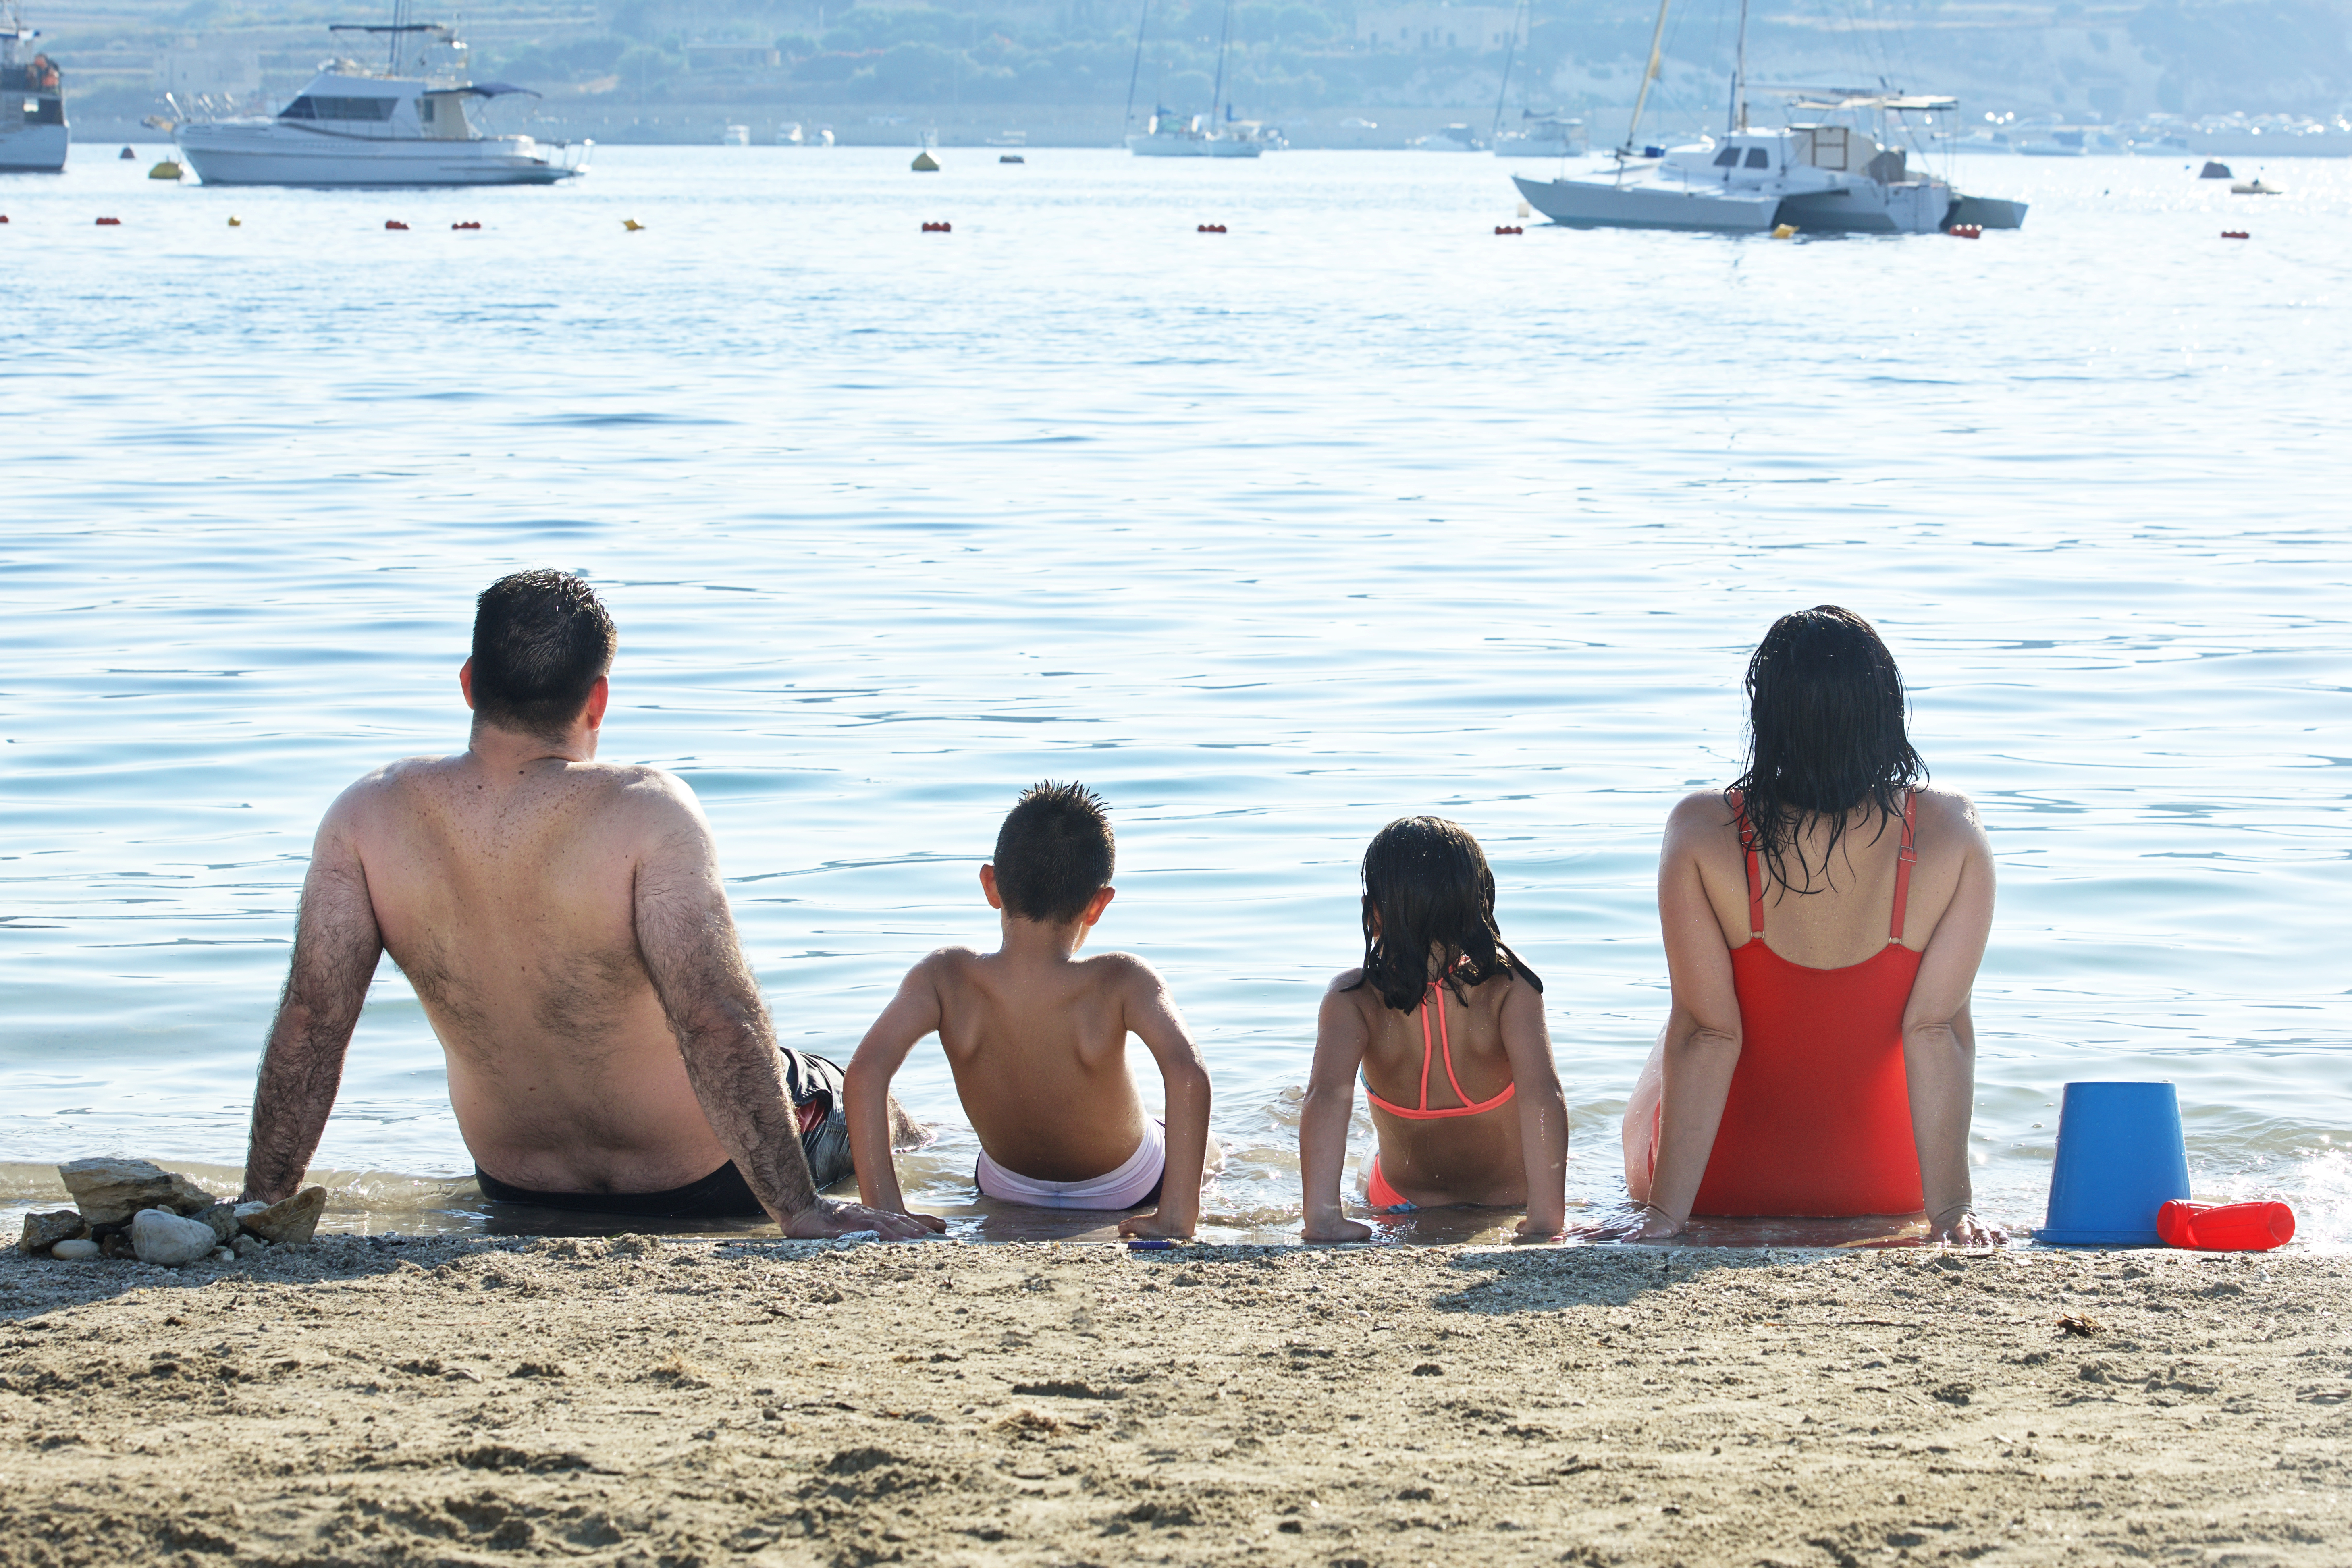 Sicily, Italy_5 may,2018: happy family enjoying near the sea in